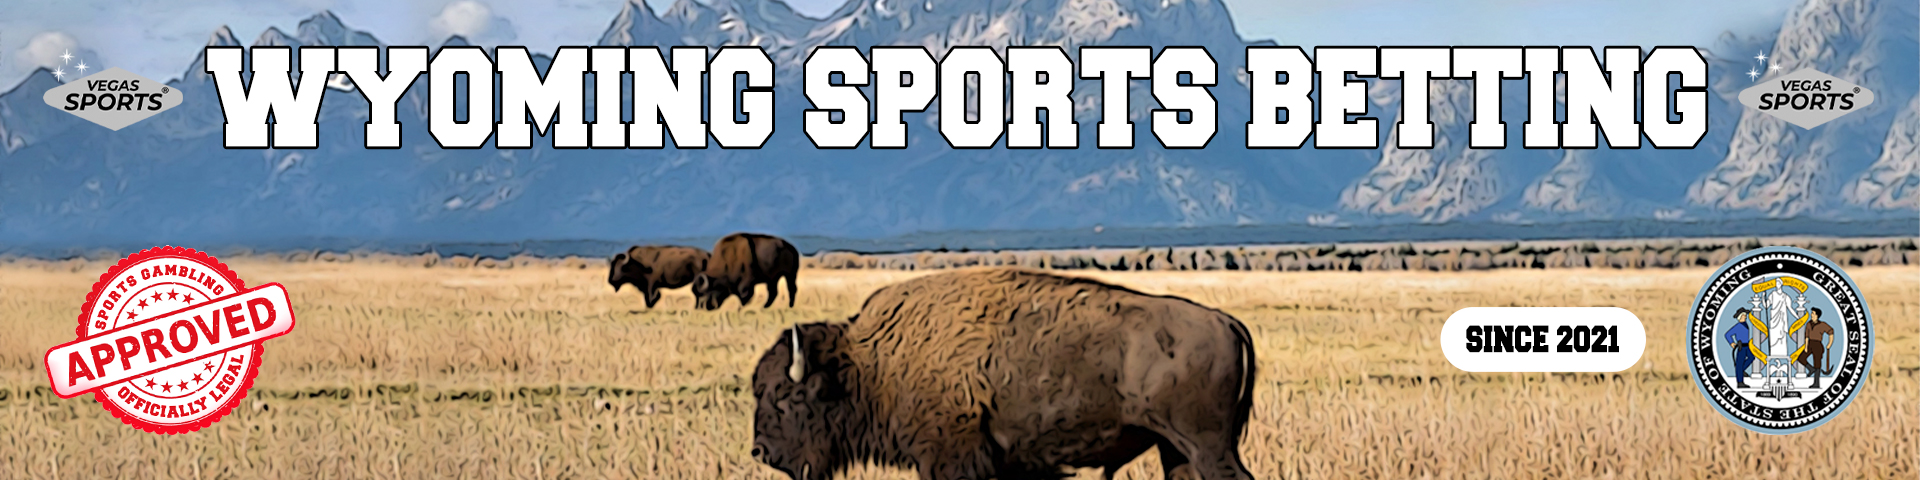 Wyoming Sports Betting